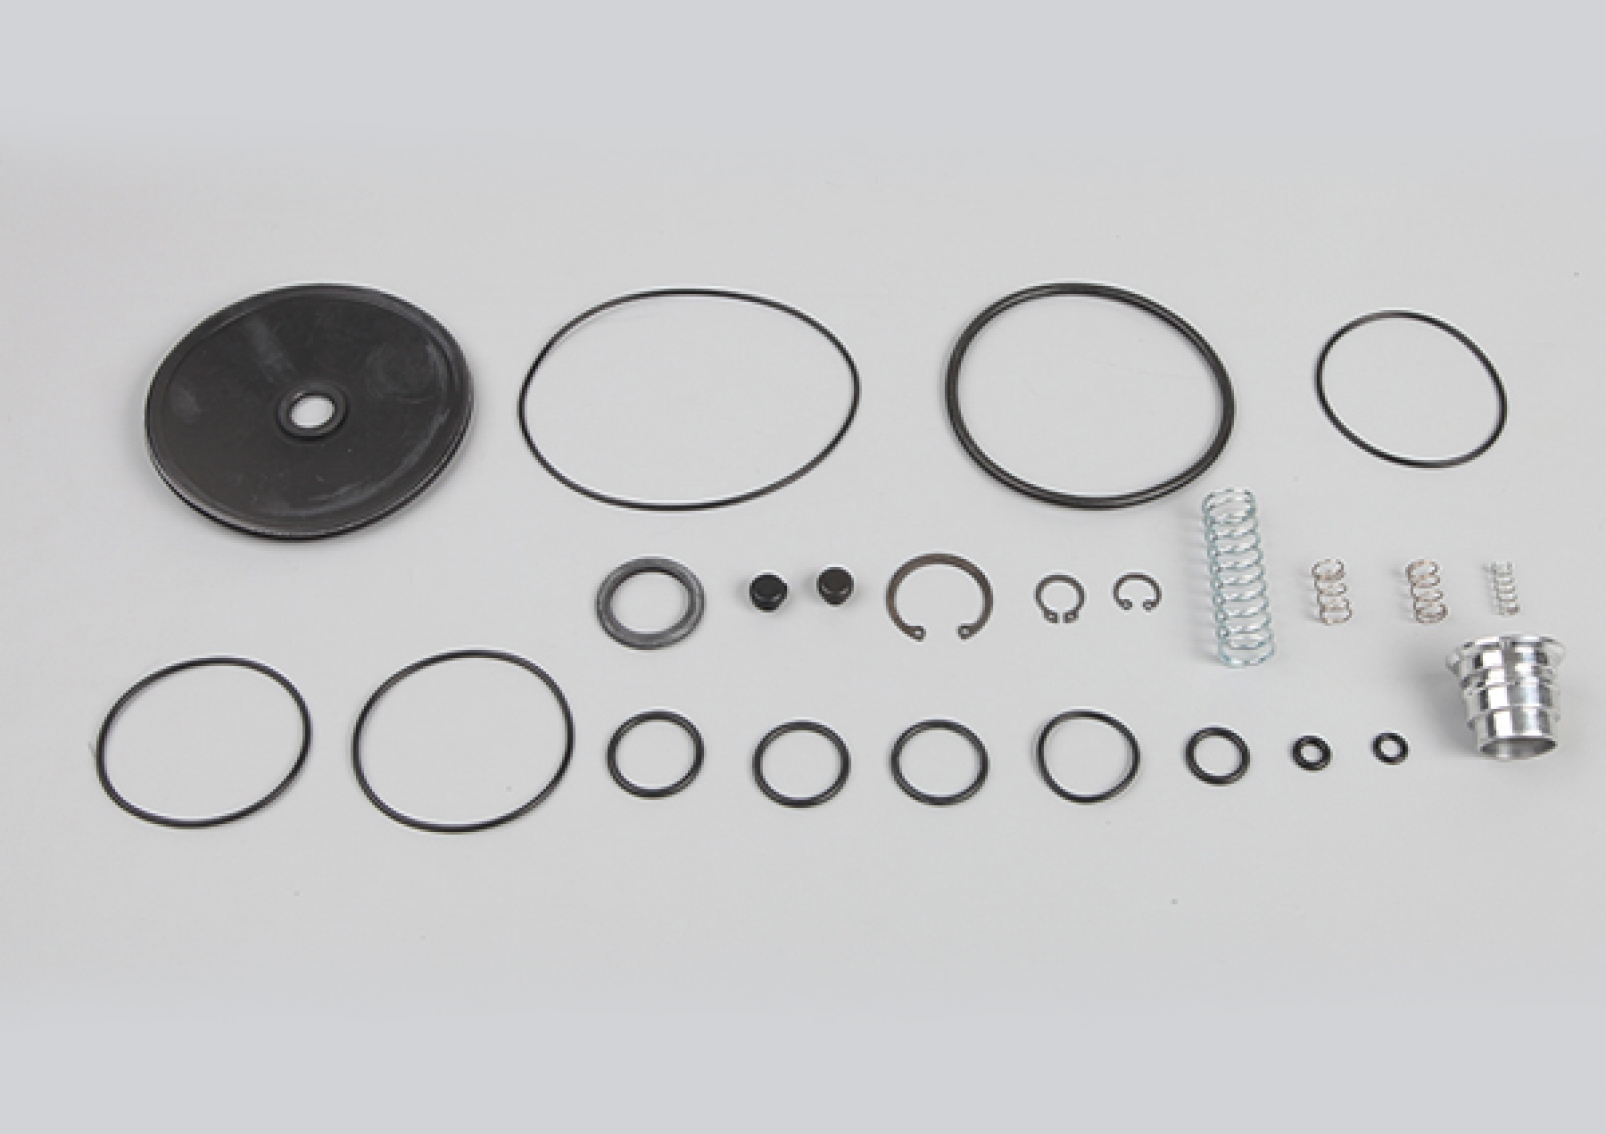 Trailer Load Sensing Valve Repair Kit, II14588/008